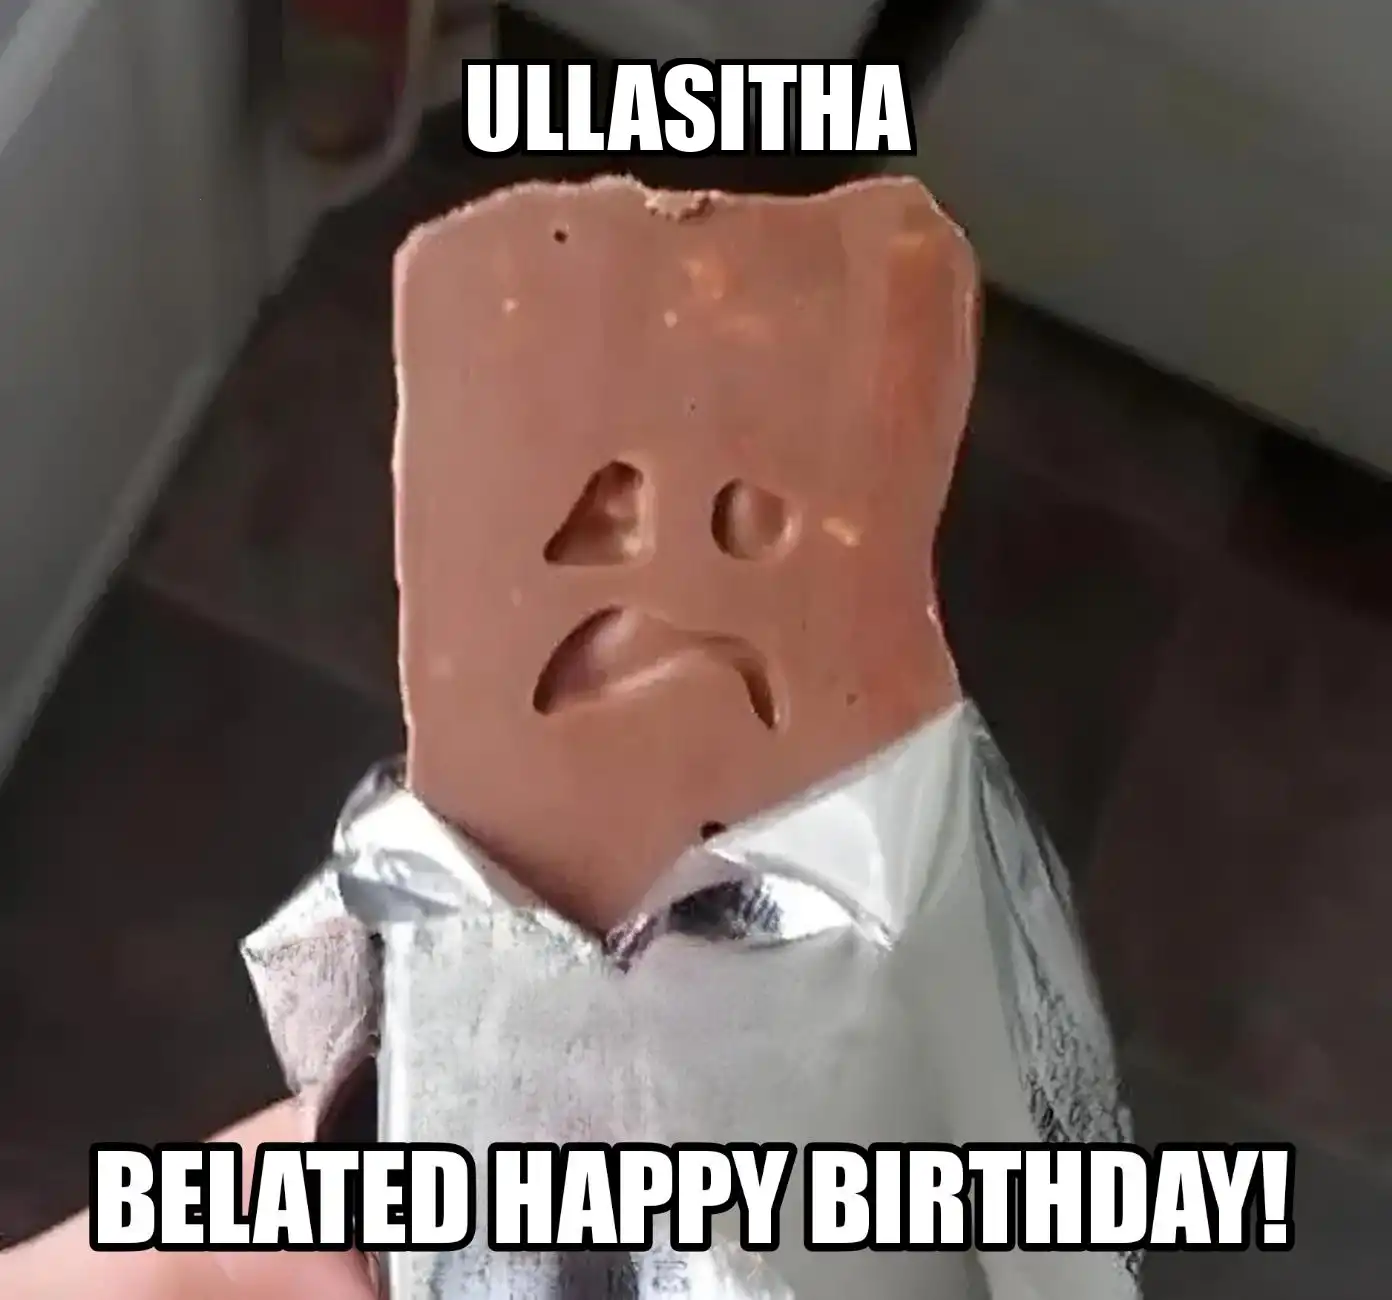 Happy Birthday Ullasitha Belated Happy Birthday Meme